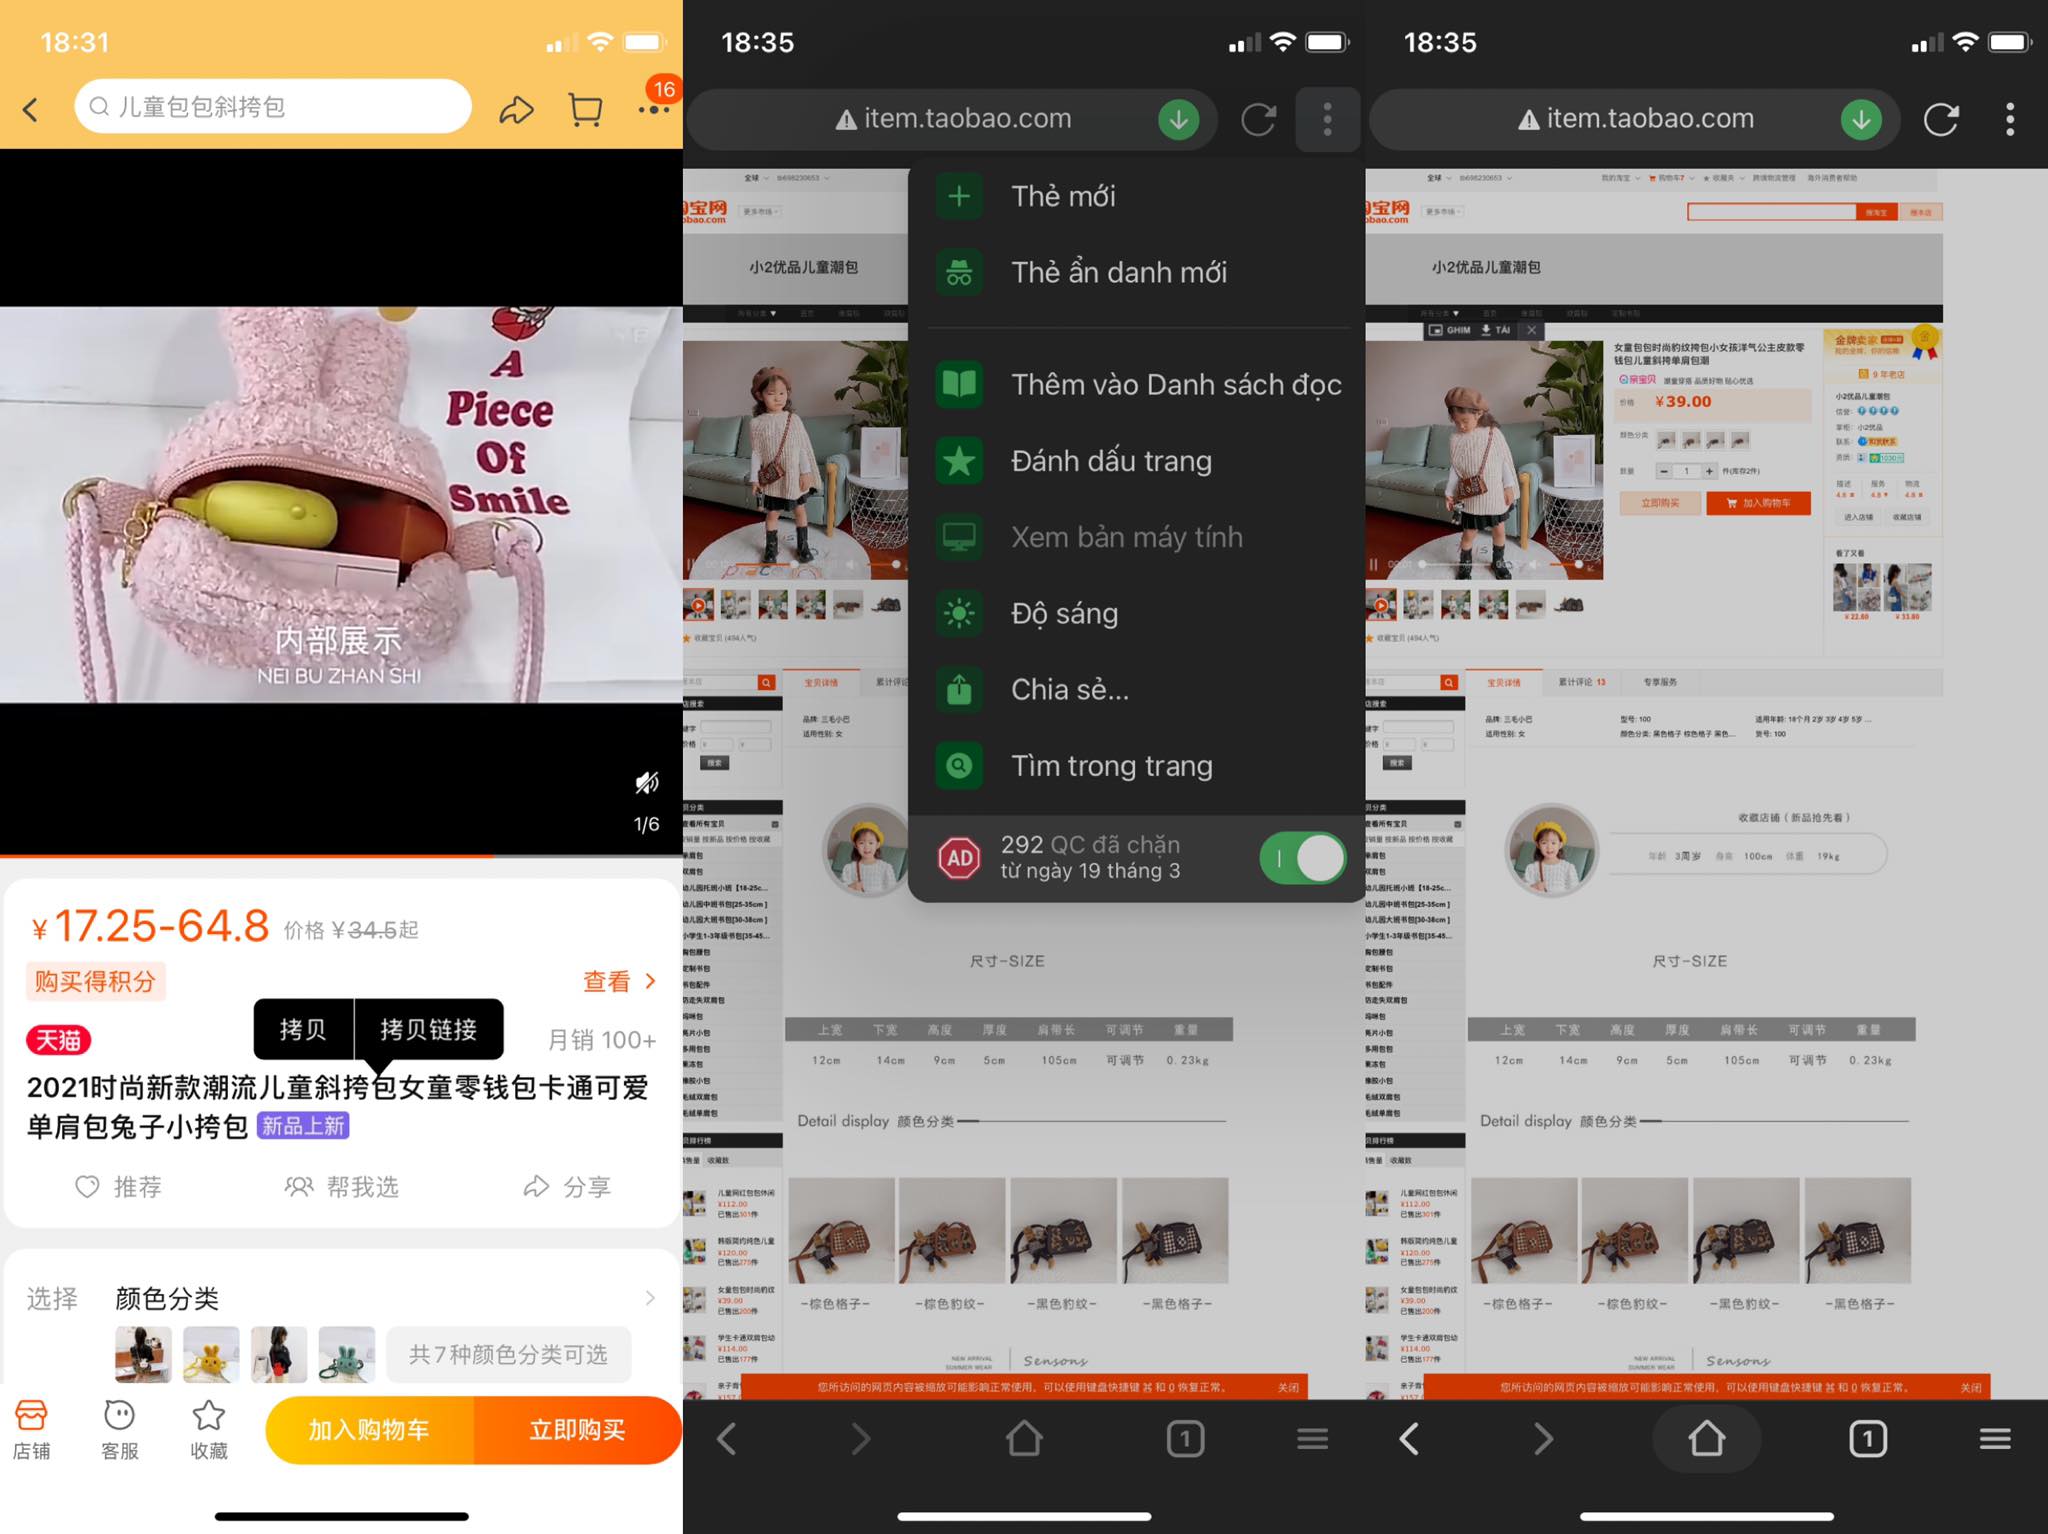 Hướng dẫn tải video Taobao bằng điện thoại